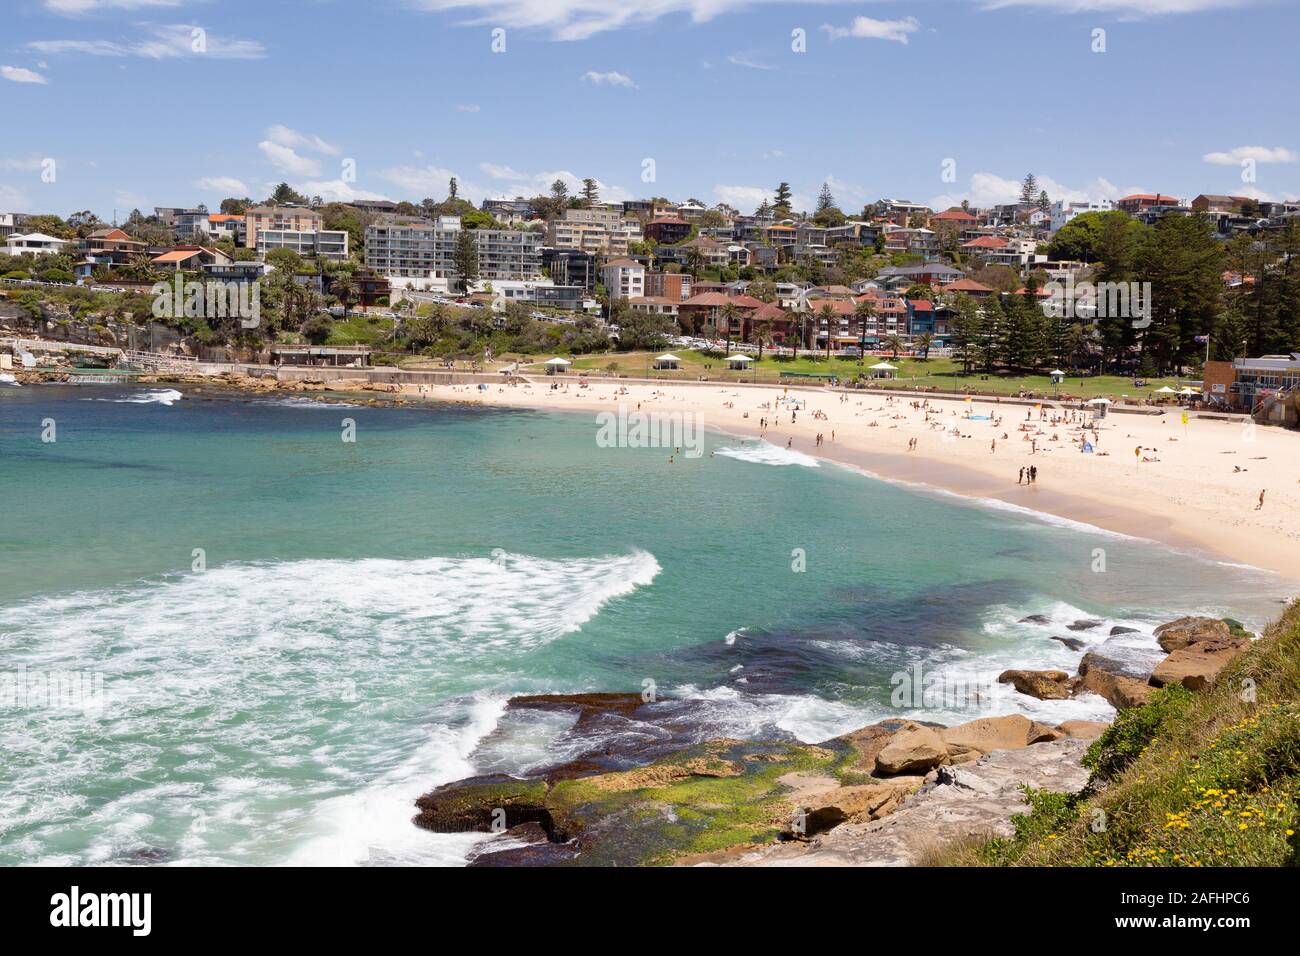 Spiaggia di Sydney - Bronte Beach, Sydney Australia - gente sulla spiaggia in una giornata di sole in estate, Sydney Australia Foto Stock